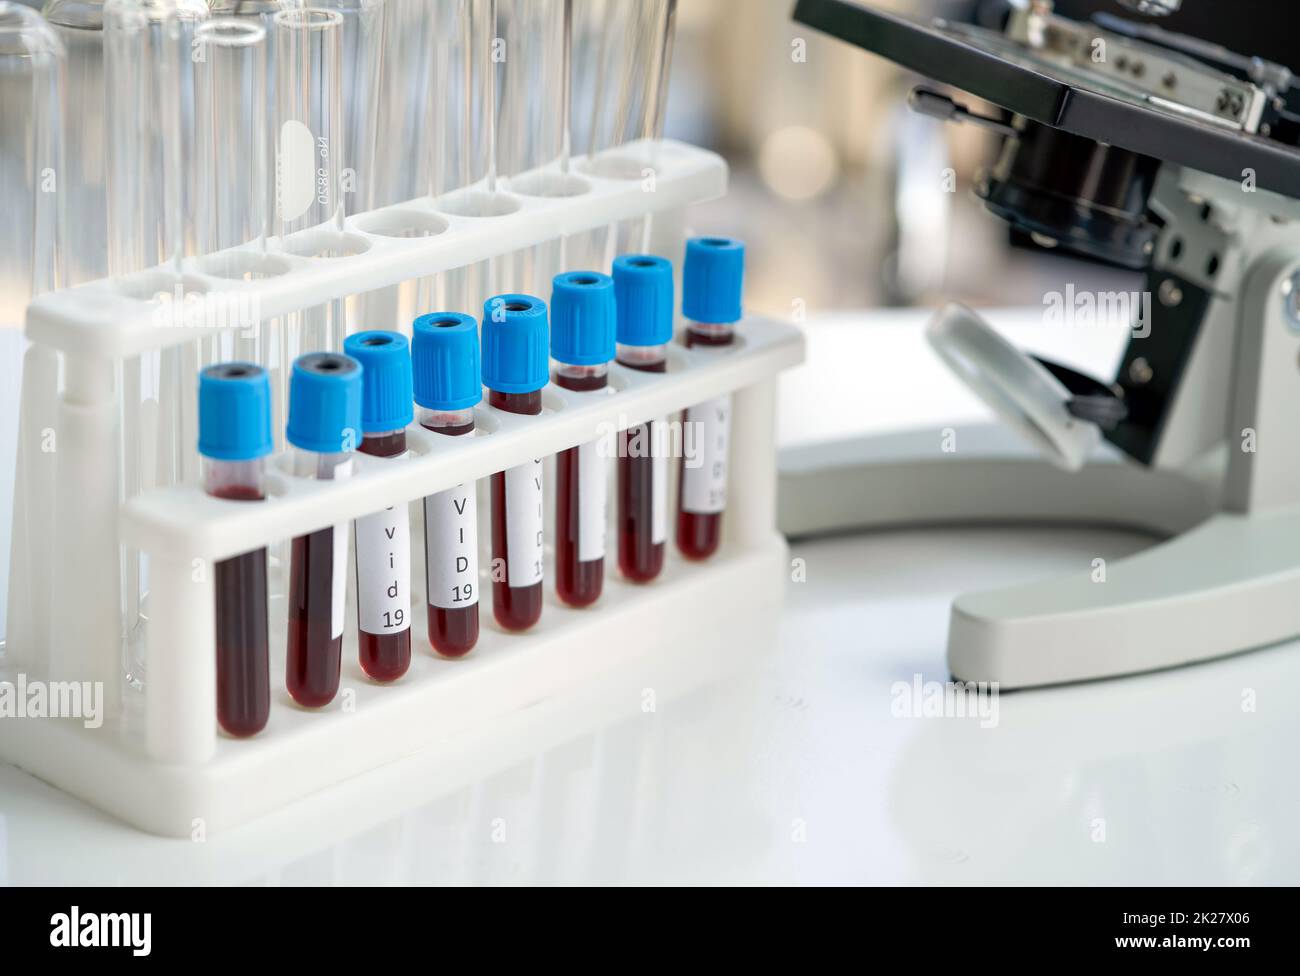 Blutentnahmeröhrchen von Covid 19-Patienten neben dem Mikroskop auf dem weißen Labortisch platzieren. Coronavirus Disease 2019 Testverfahren in einem Labor, das die Verbreitung der Virusforschung verhindert. Stockfoto